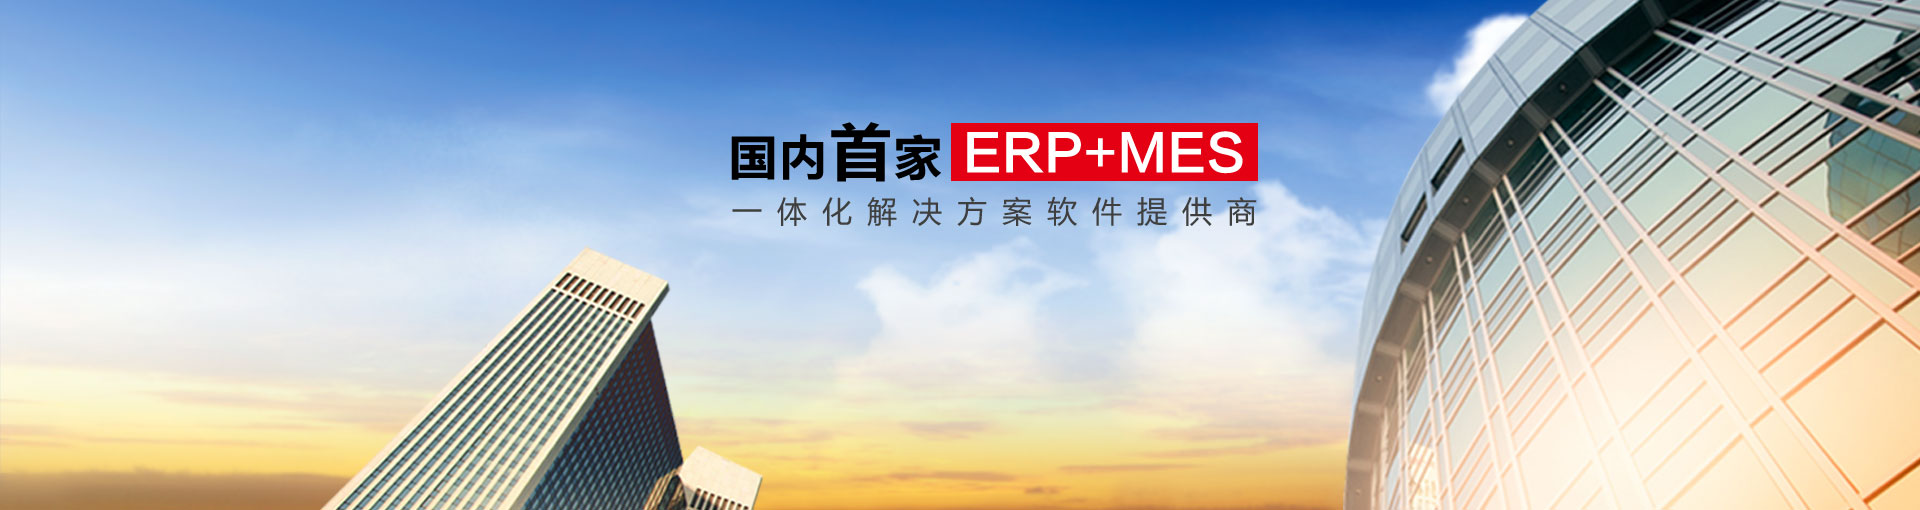 傲鹏ERP产品4